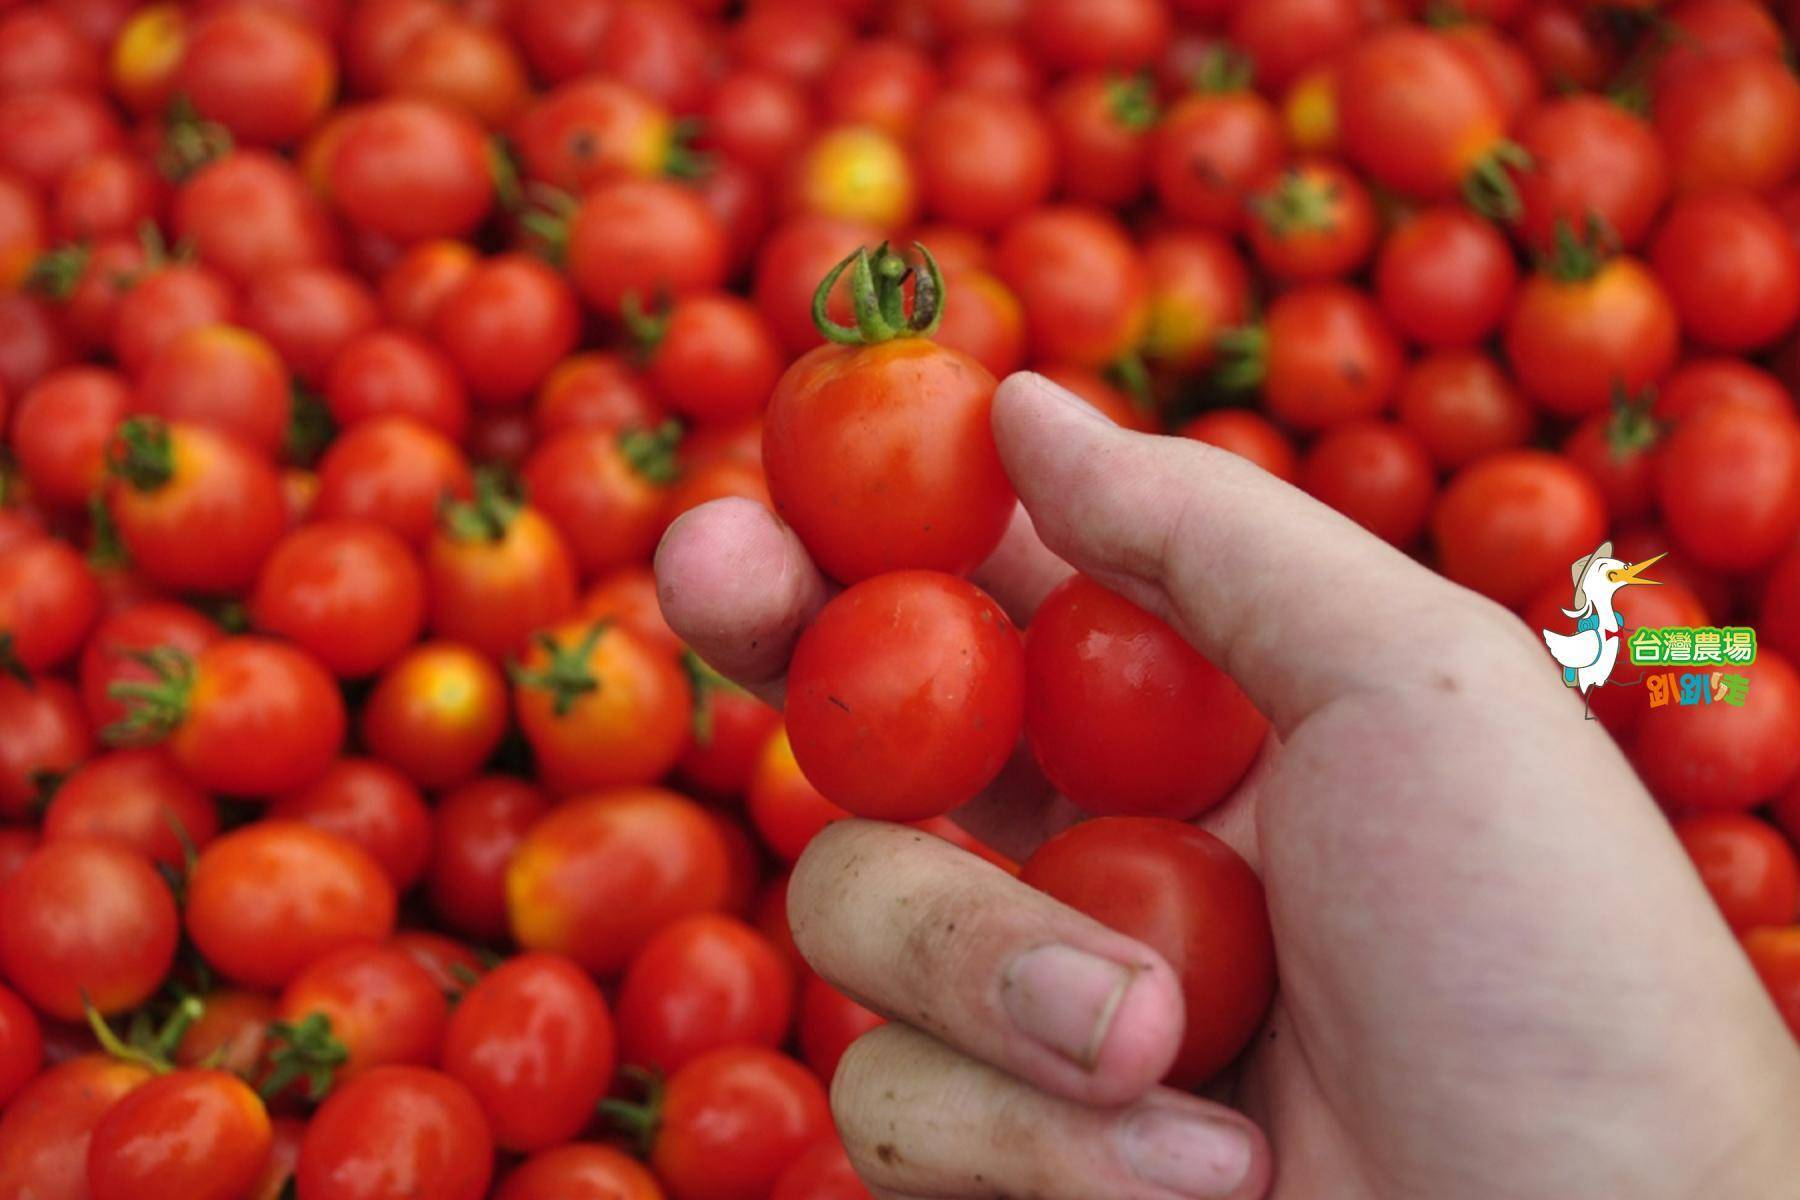 南投-台一生態休閒農場-採果(蕃茄、百香果、草莓)體驗券15